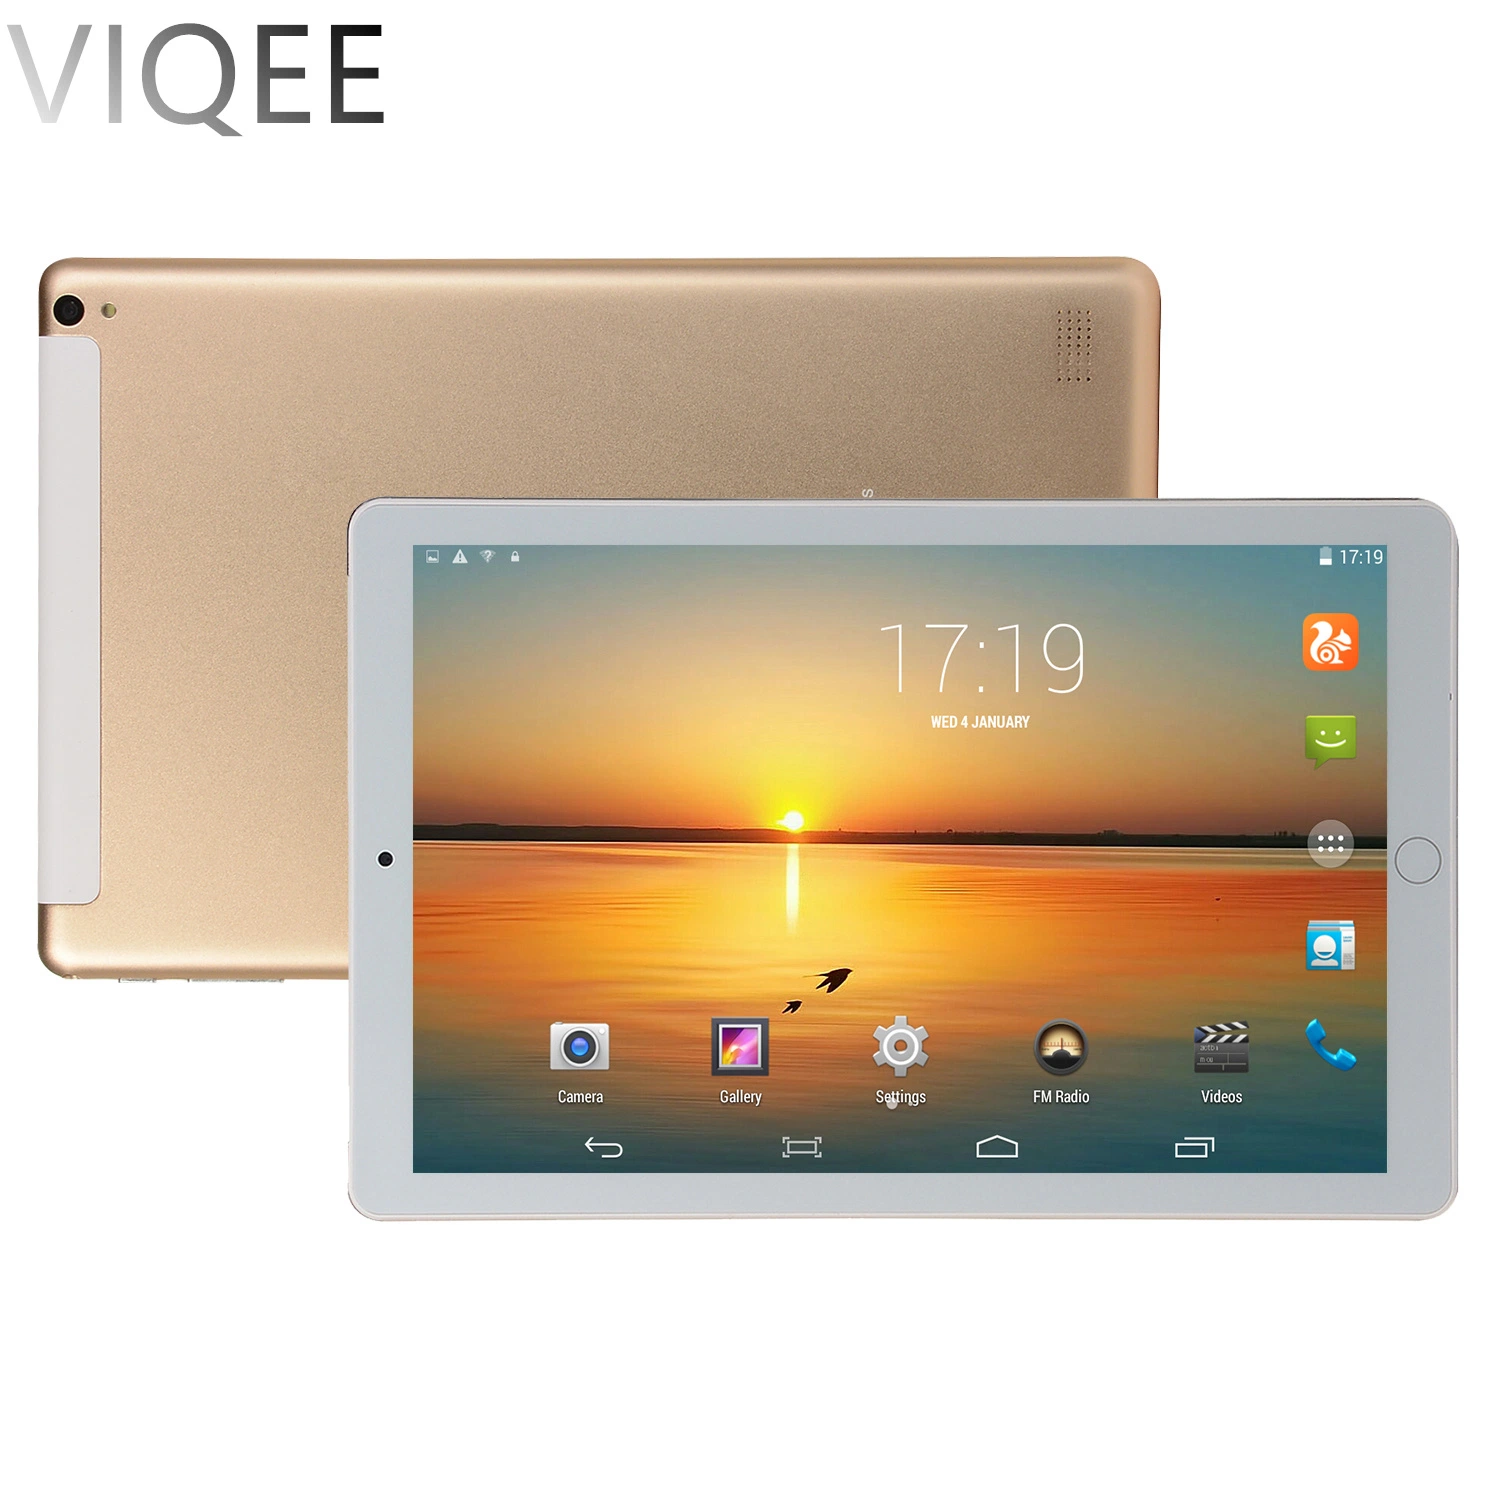 El comercio exterior Viqee producto, nuevo Tablet PC de 10,1 pulgadas modelo estilo fruta Octa-Core Dual SIM, el sistema Android Tablet PC. Comercio al por mayor OEM/ODM.